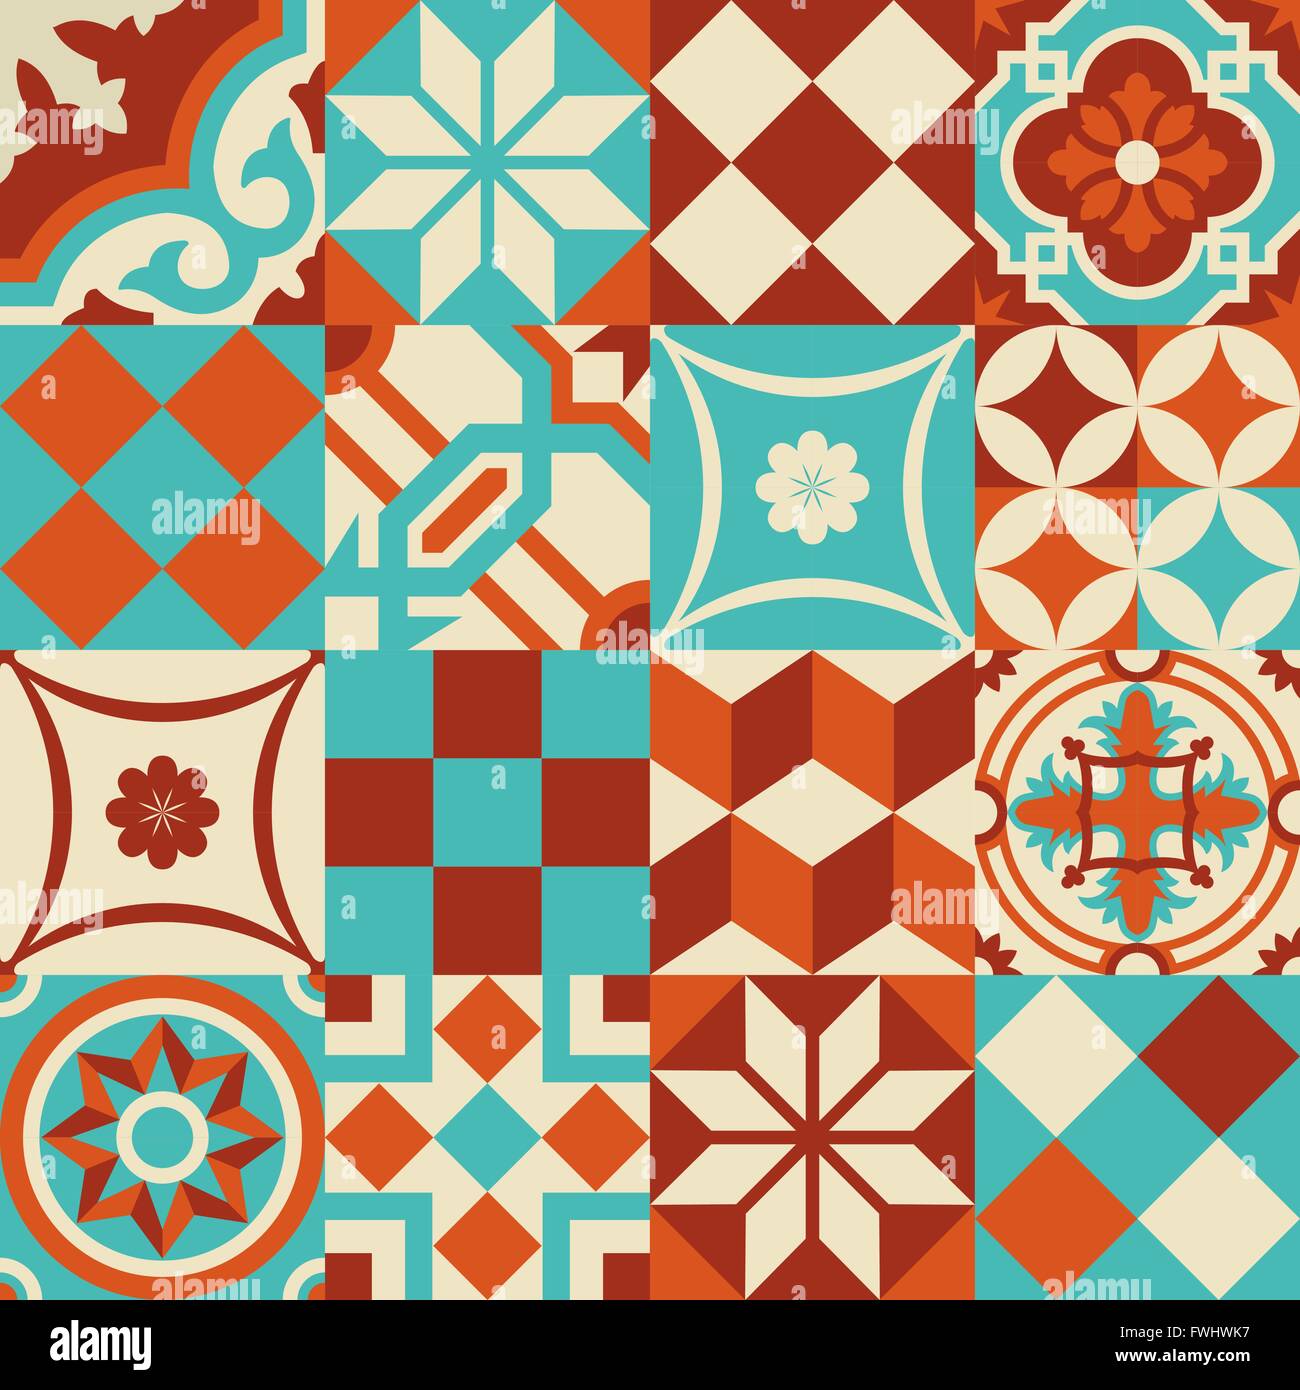 Traditionelle Keramik Mosaik Fliesen Musterdesign Abbildung gemischt mit modernen, lebendigen Farben und Formen im Patchwork-Stil. Stock Vektor